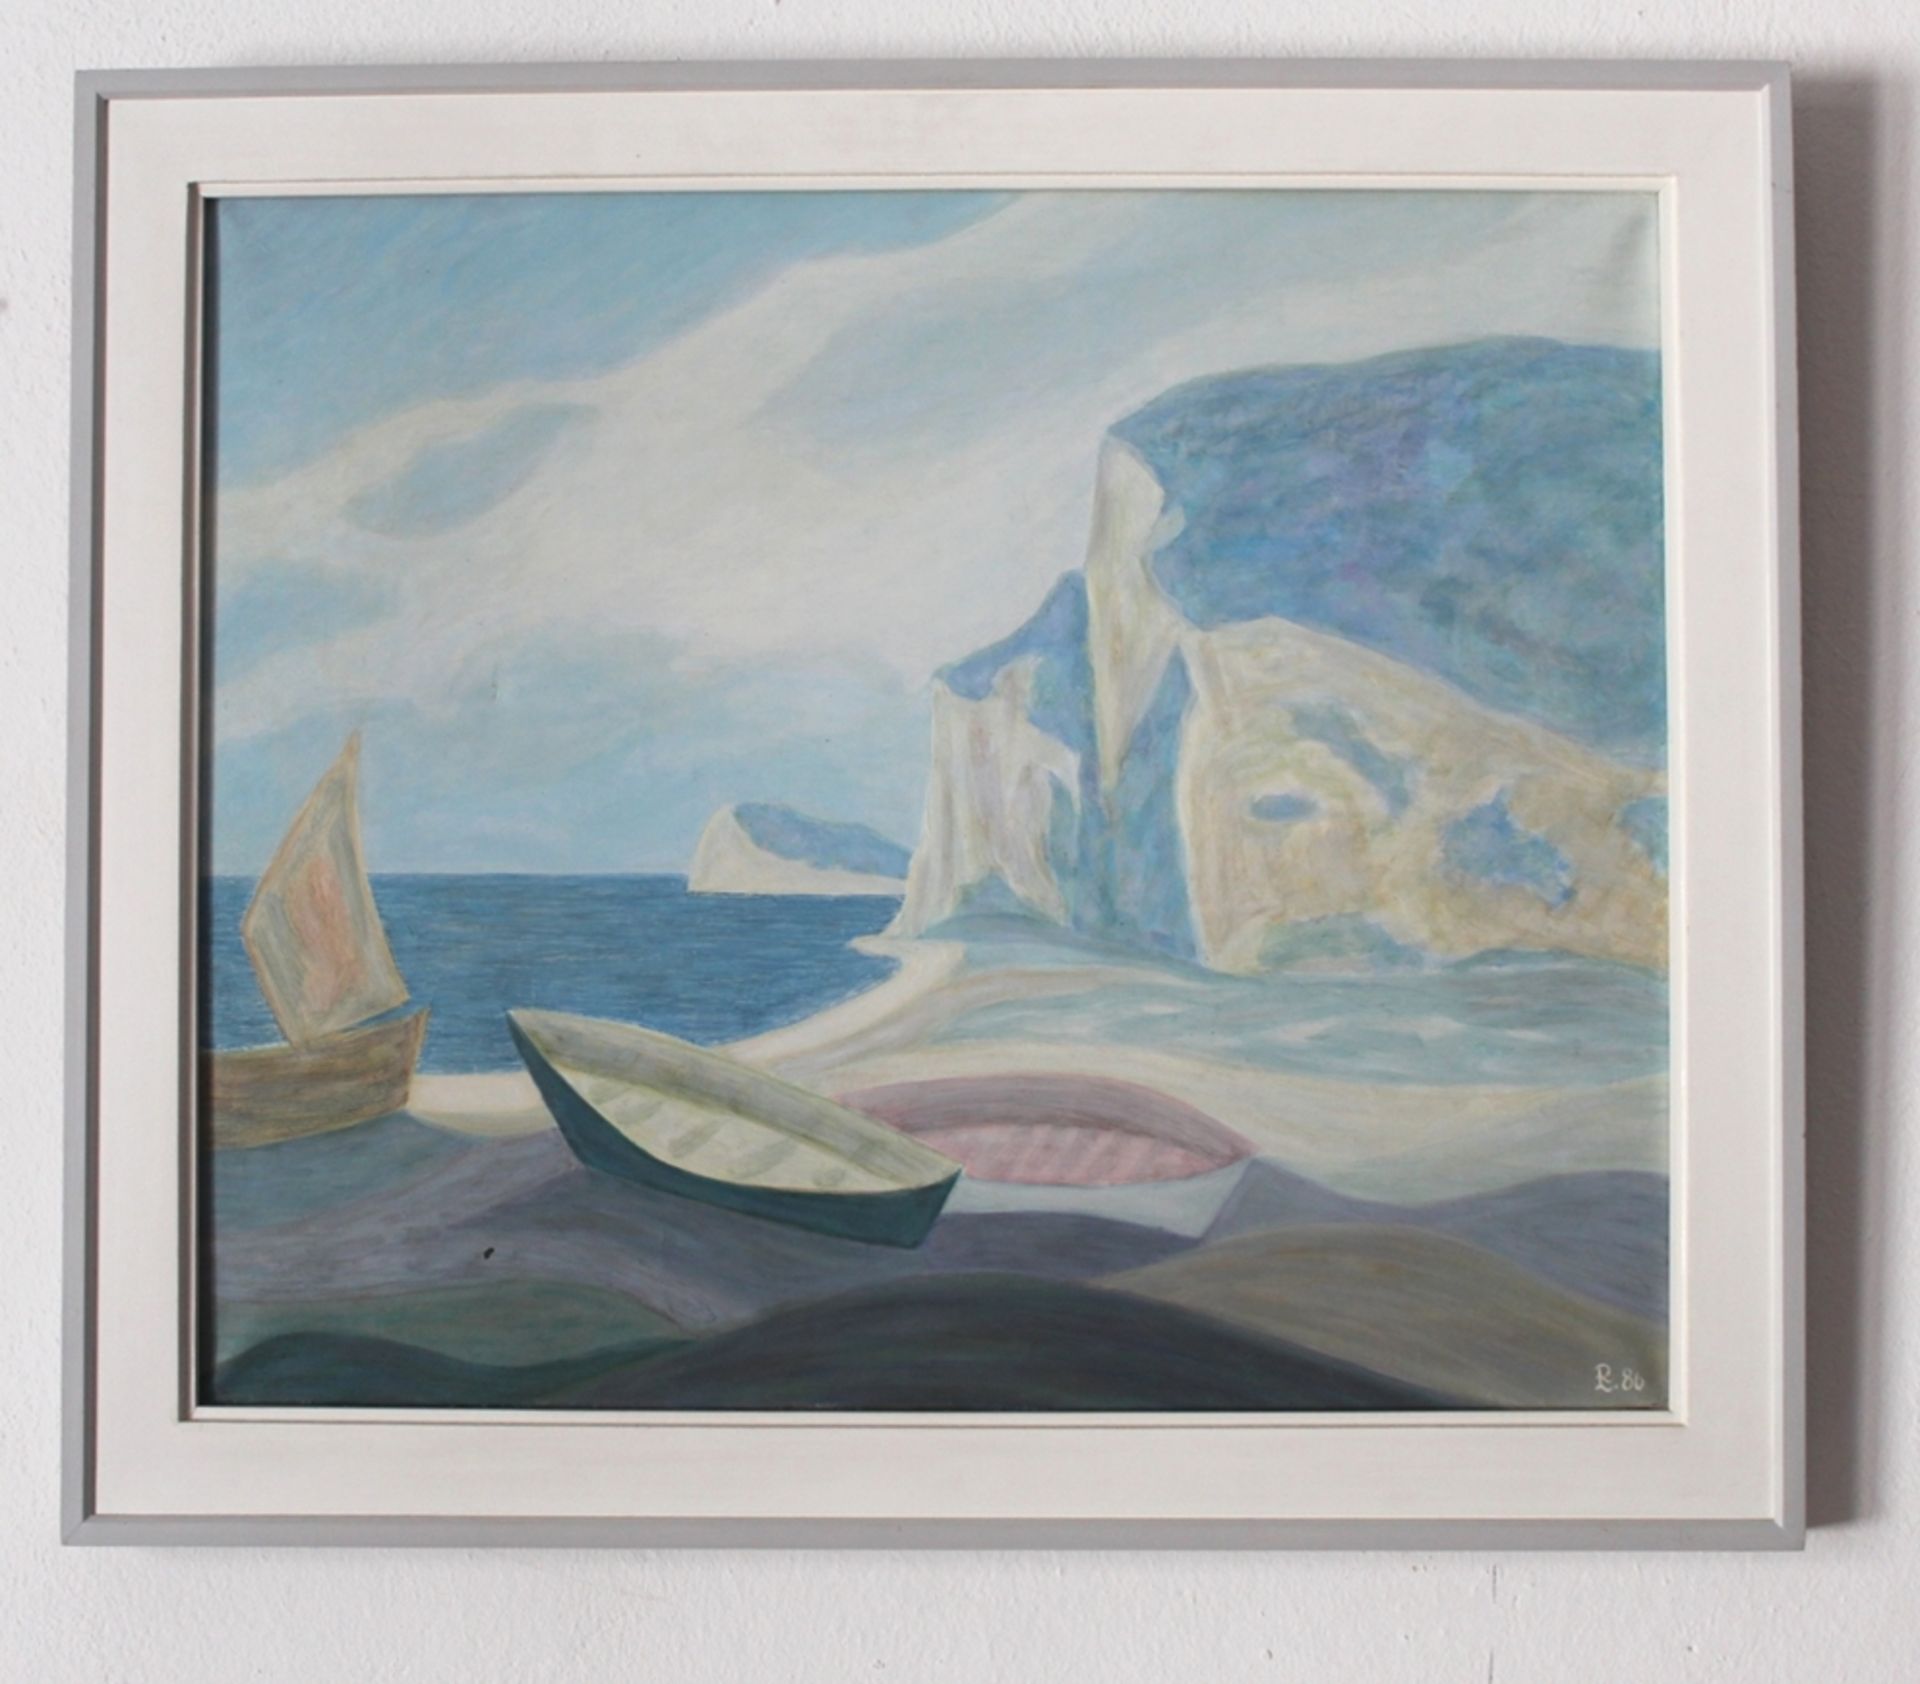 Gemälde "Küste von Eretat, Normandie", Künstler: Leopold Reiser-Vaney, - Nr. 147, Öl auf Leinwand; 